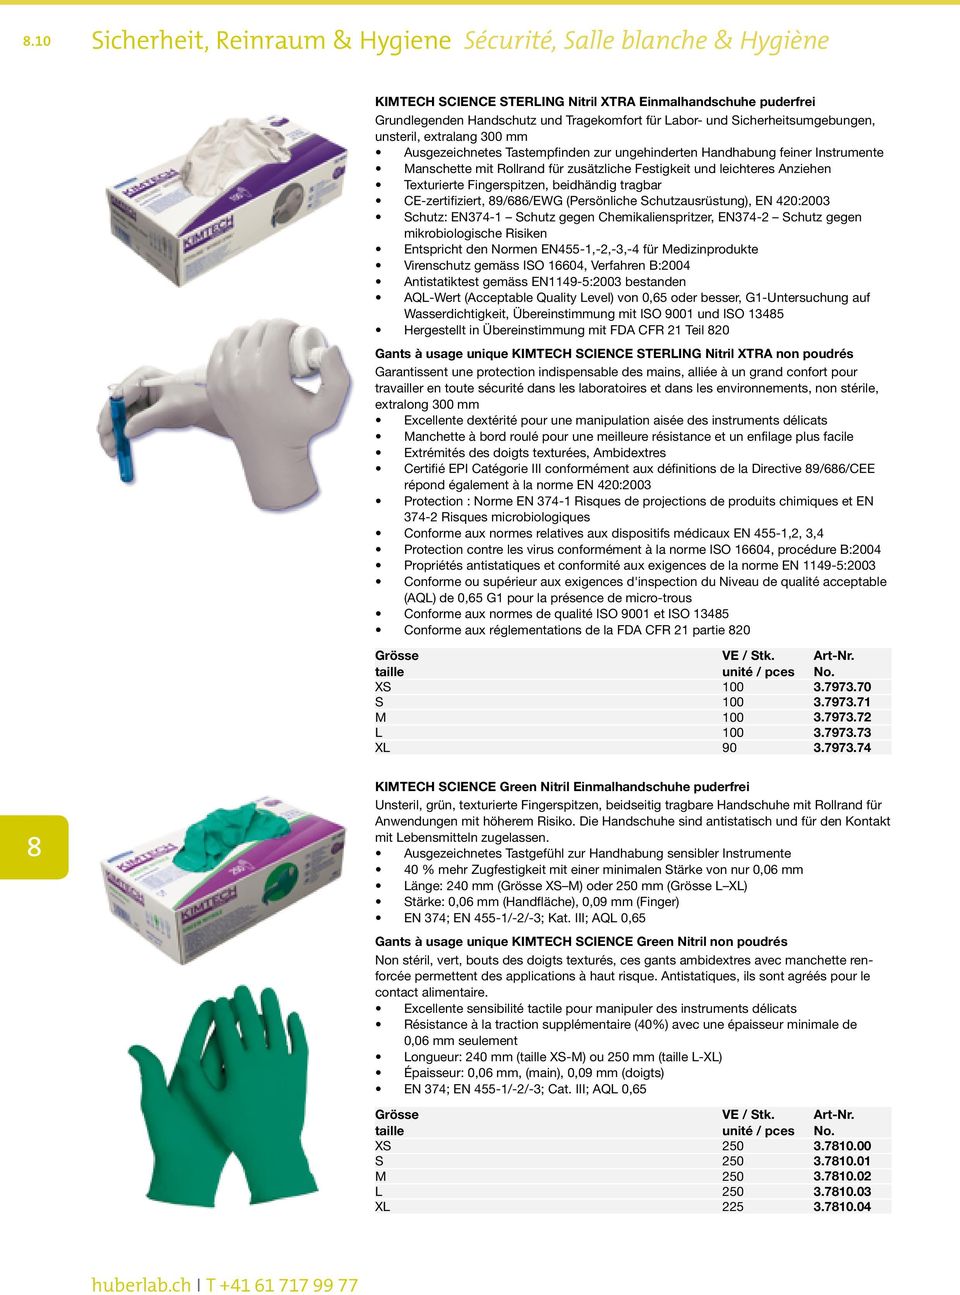 Anziehen Texturierte Fingerspitzen, beidhändig tragbar CE-zertifiziert, 9/66/EWG (Persönliche Schutzausrüstung), EN 420:2003 Schutz: EN374-1 Schutz gegen Chemikalienspritzer, EN374-2 Schutz gegen